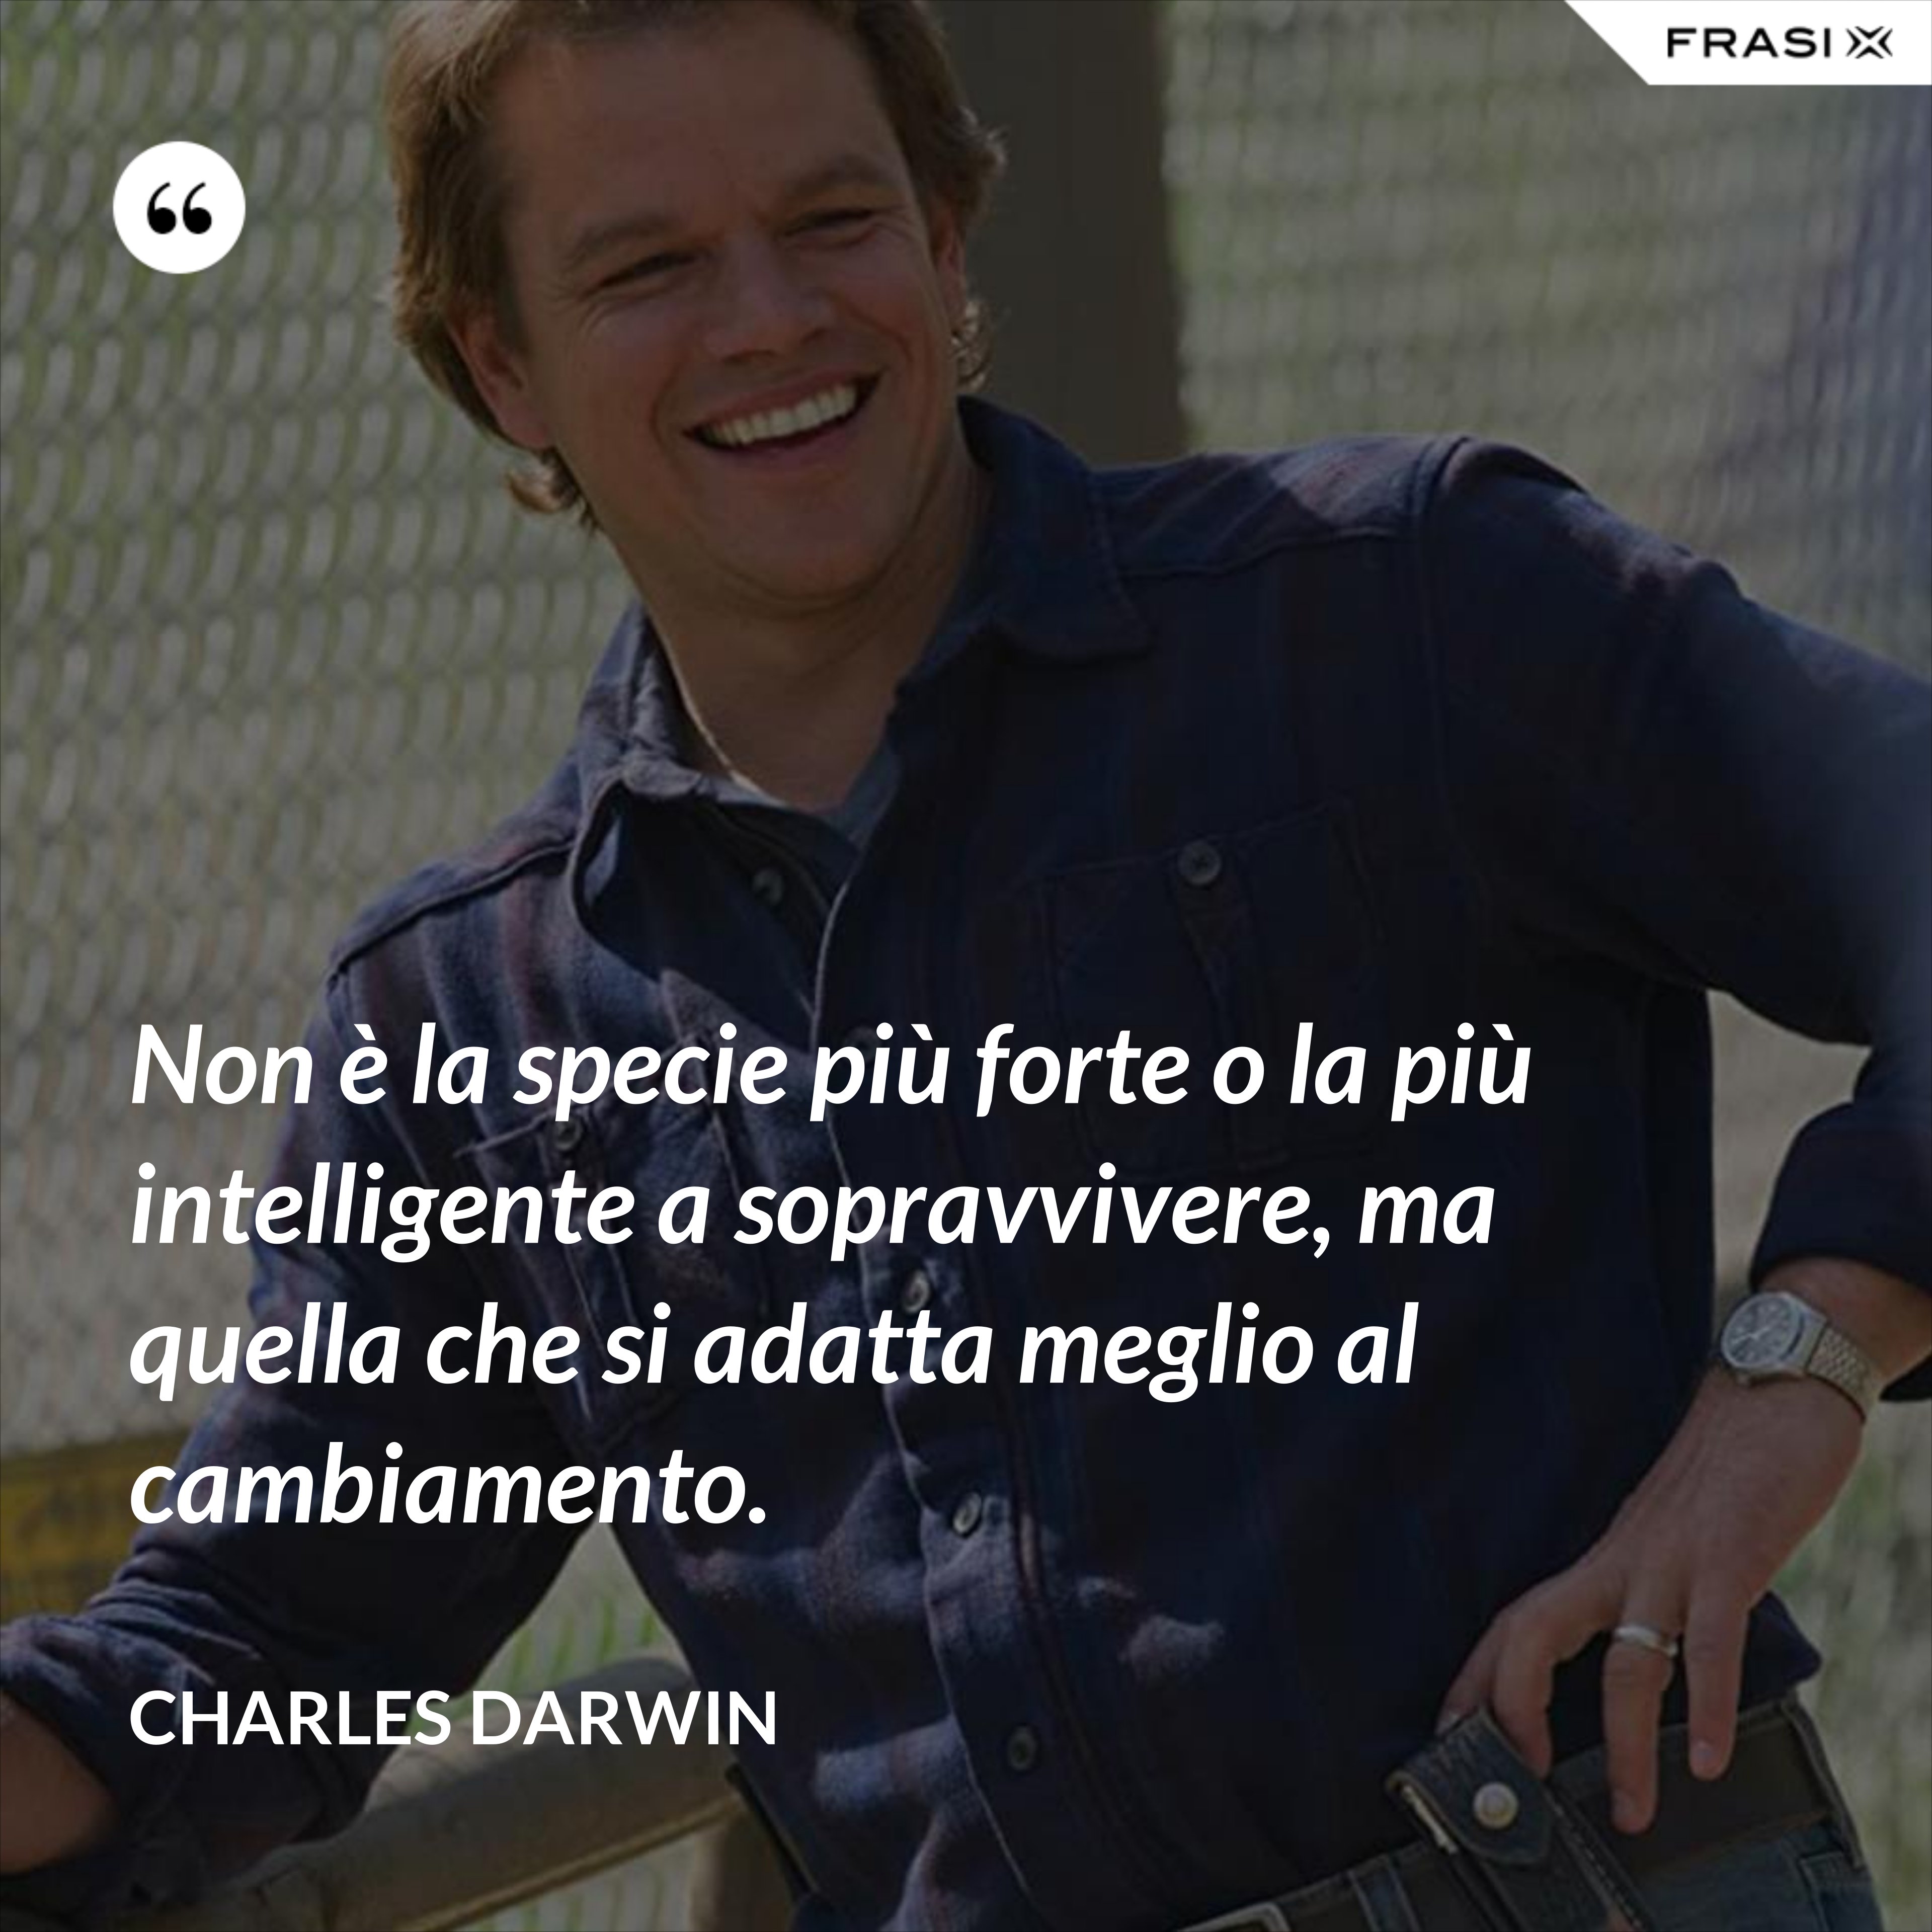 Non è la specie più forte o la più intelligente a sopravvivere, ma quella che si adatta meglio al cambiamento. - Charles Darwin